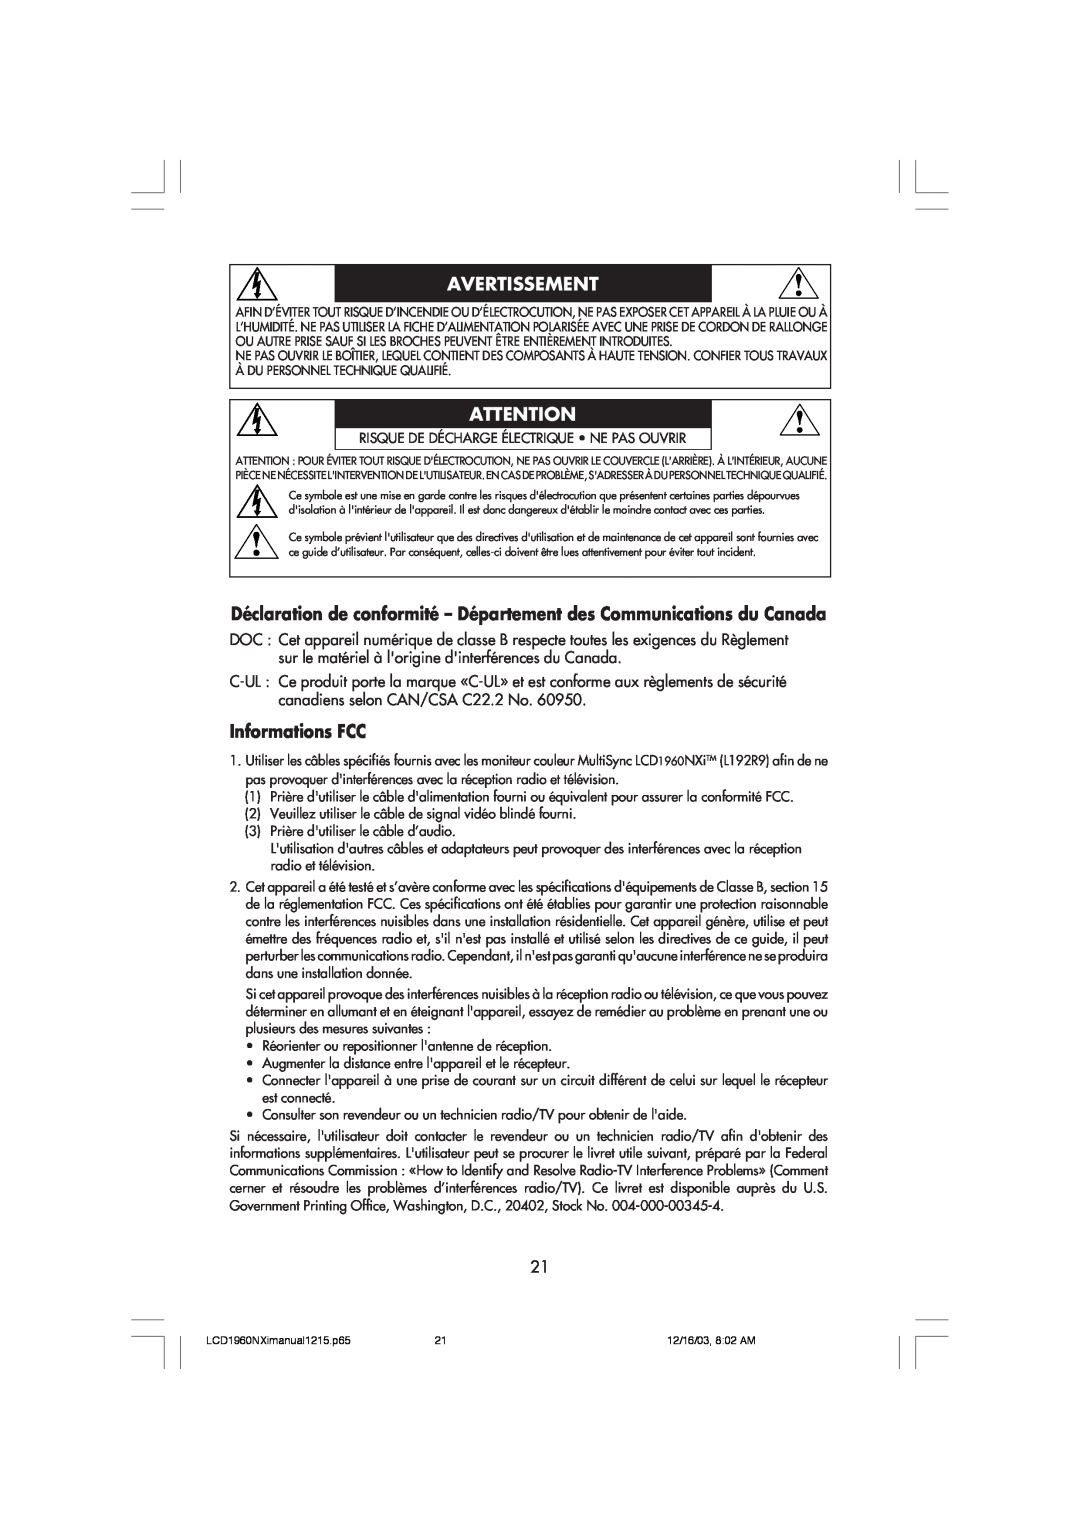 NEC LCD1960NXI manual Déclaration de conformité - Département des Communications du Canada, Informations FCC, Avertissement 